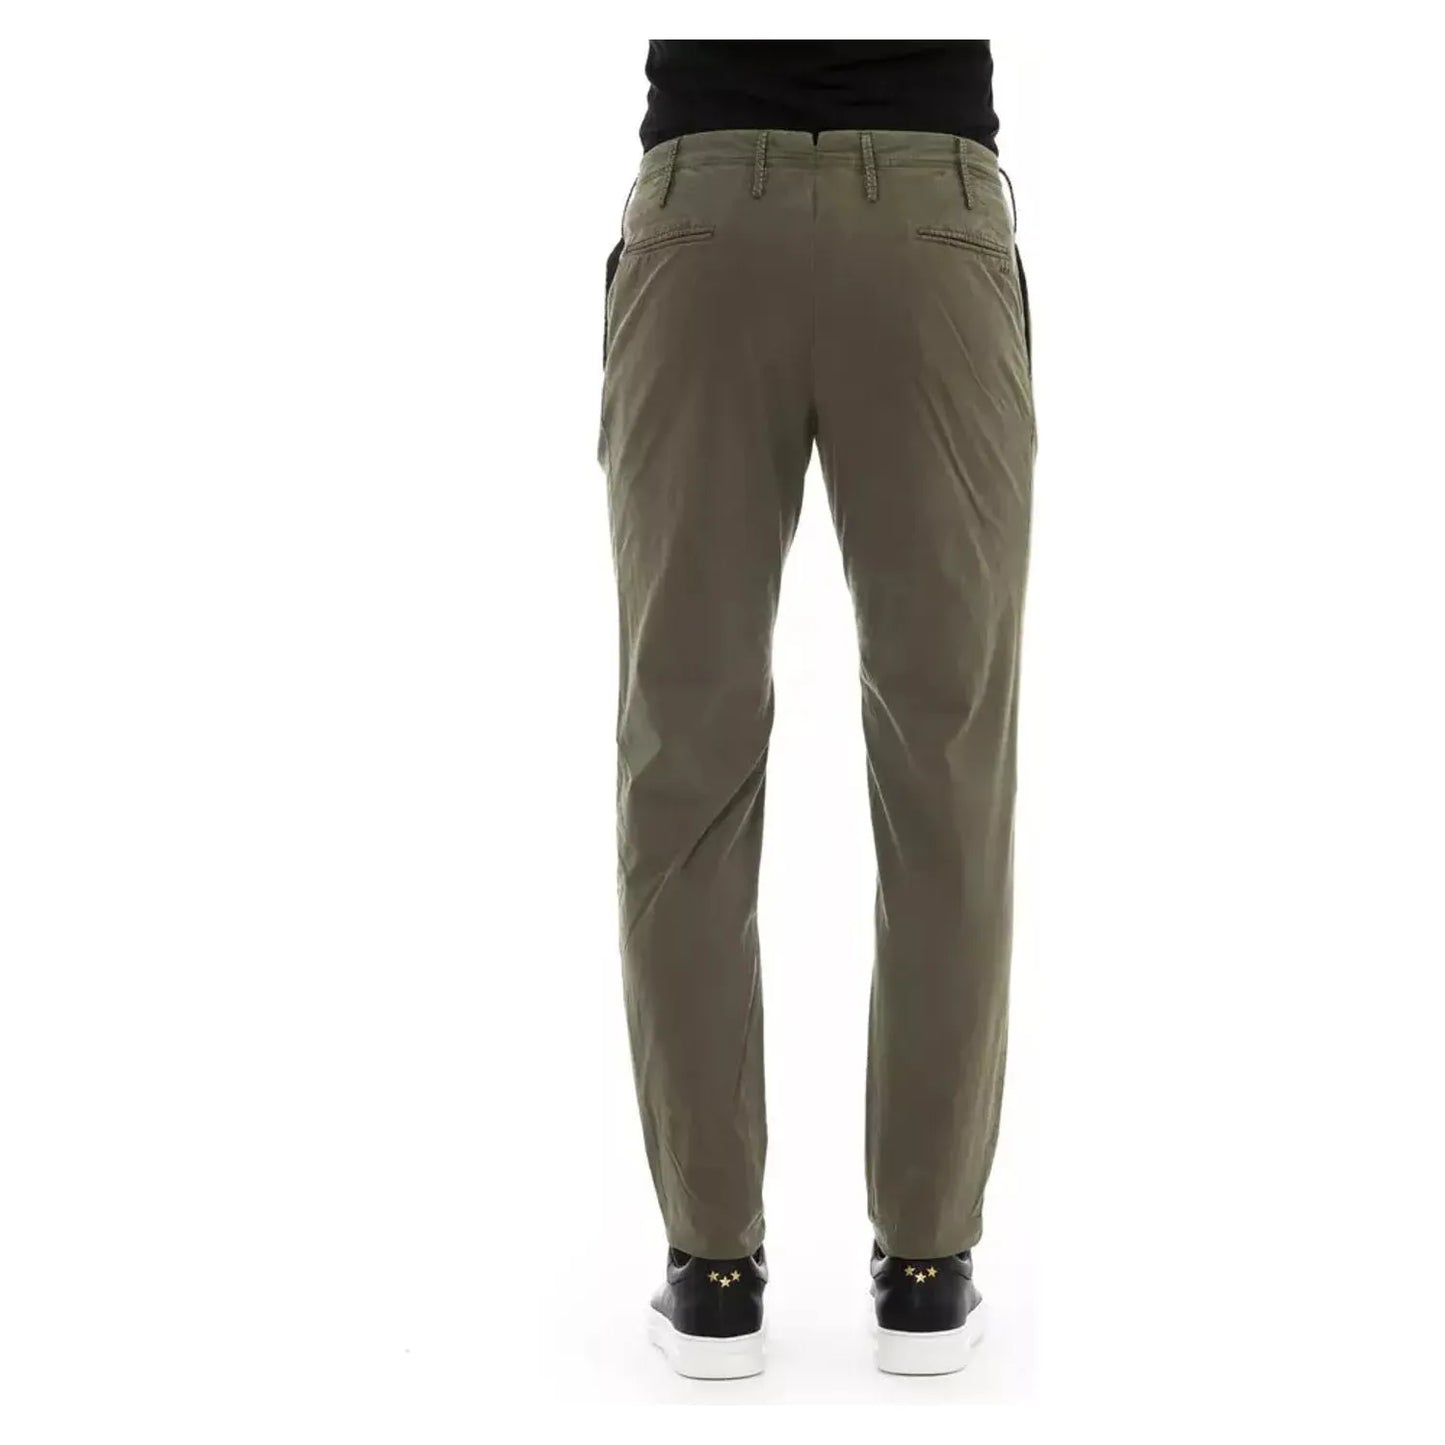 PT Torino Refined Cotton Stretch Men's Trousers army-cotton-jeans-pant-3 product-22540-279623853-19-6de33a78-d25.webp